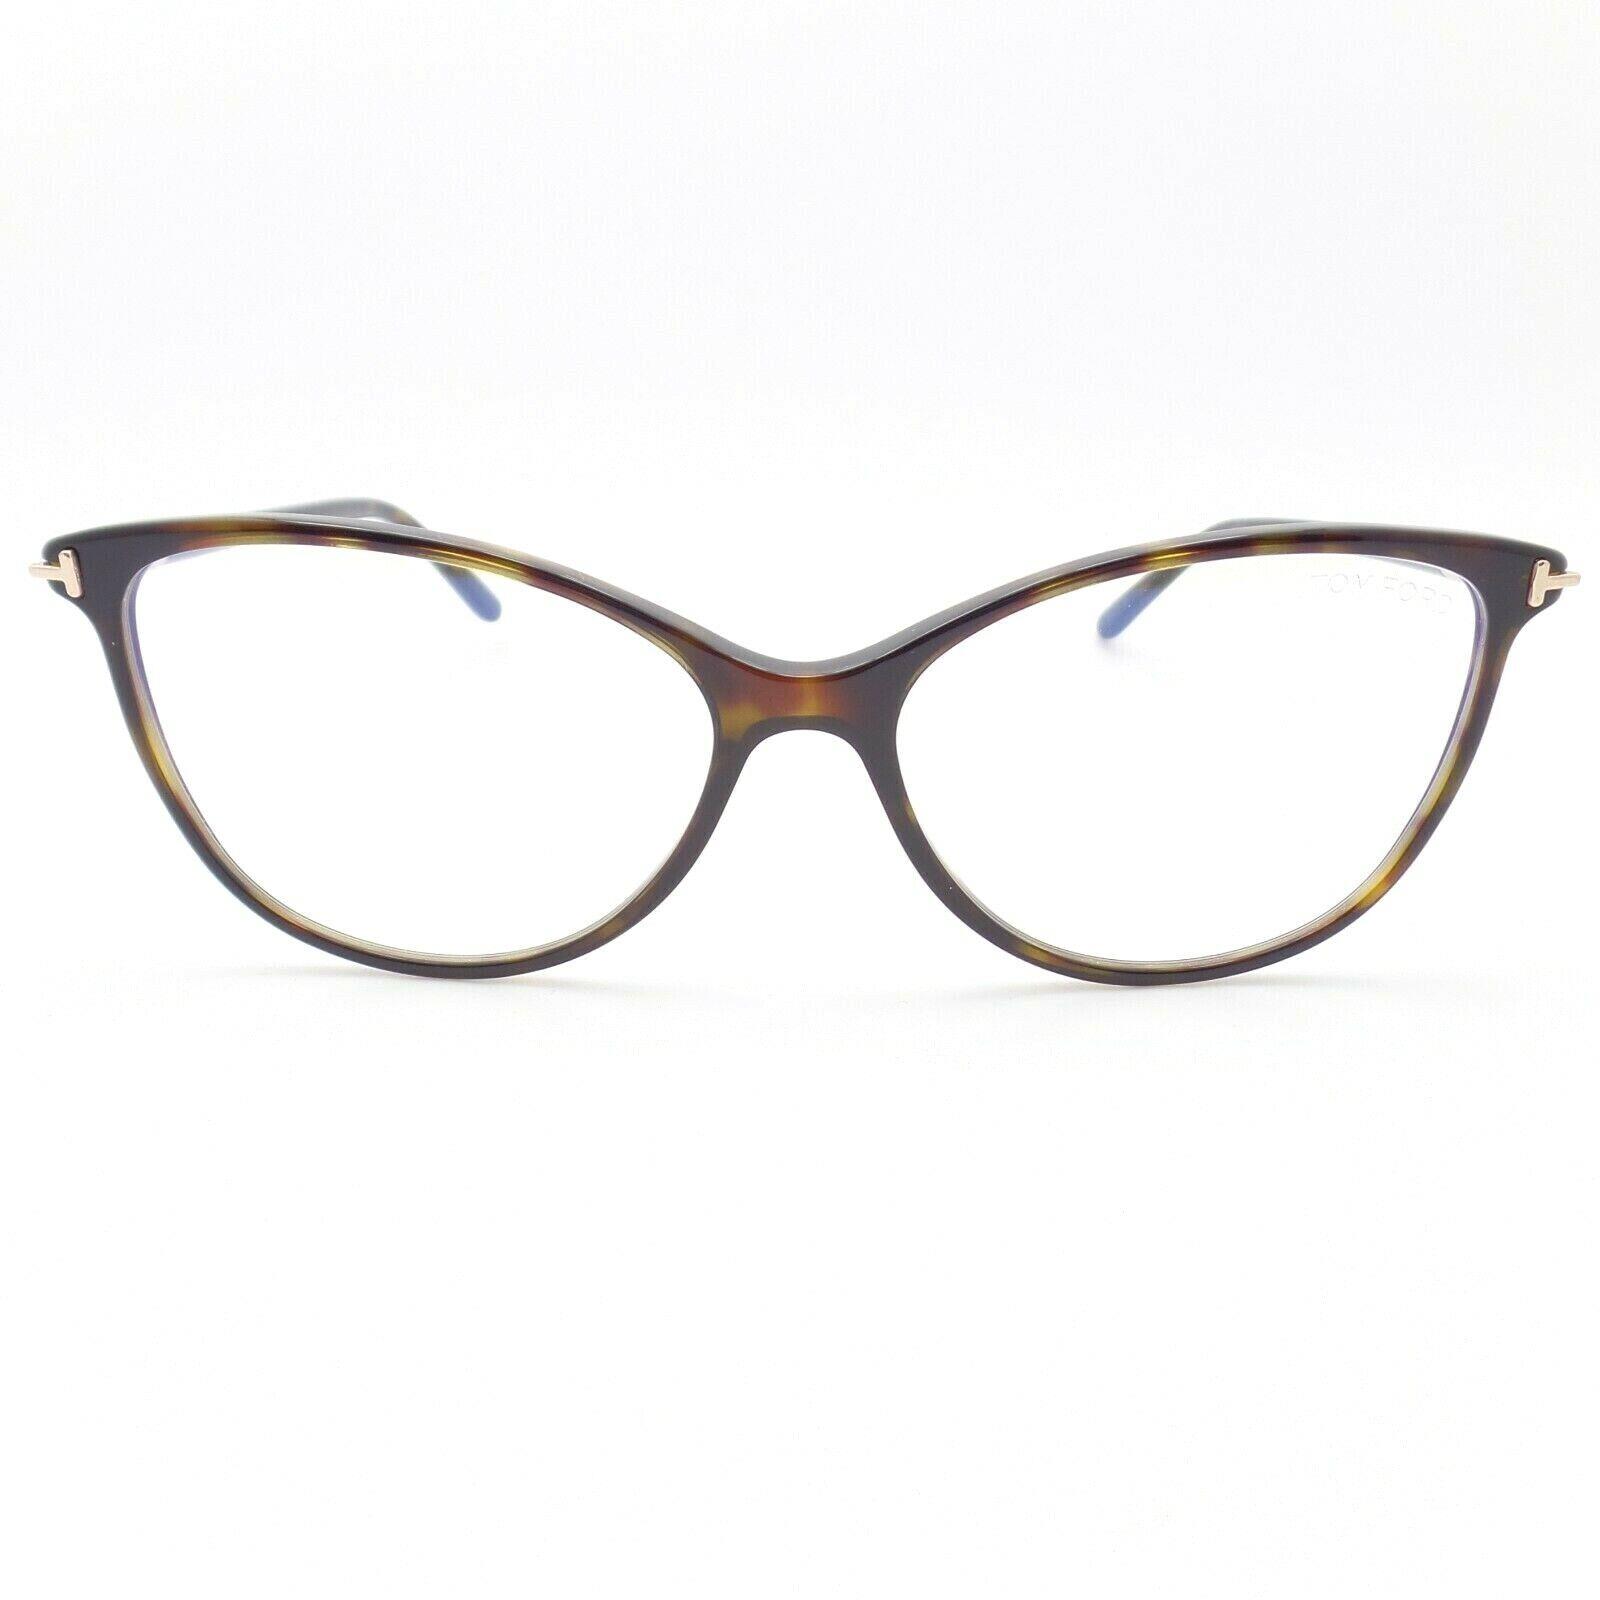 Tom Ford 5616 052 54 Dark Havana Eyeglasses Frames Blue Block Lens ...